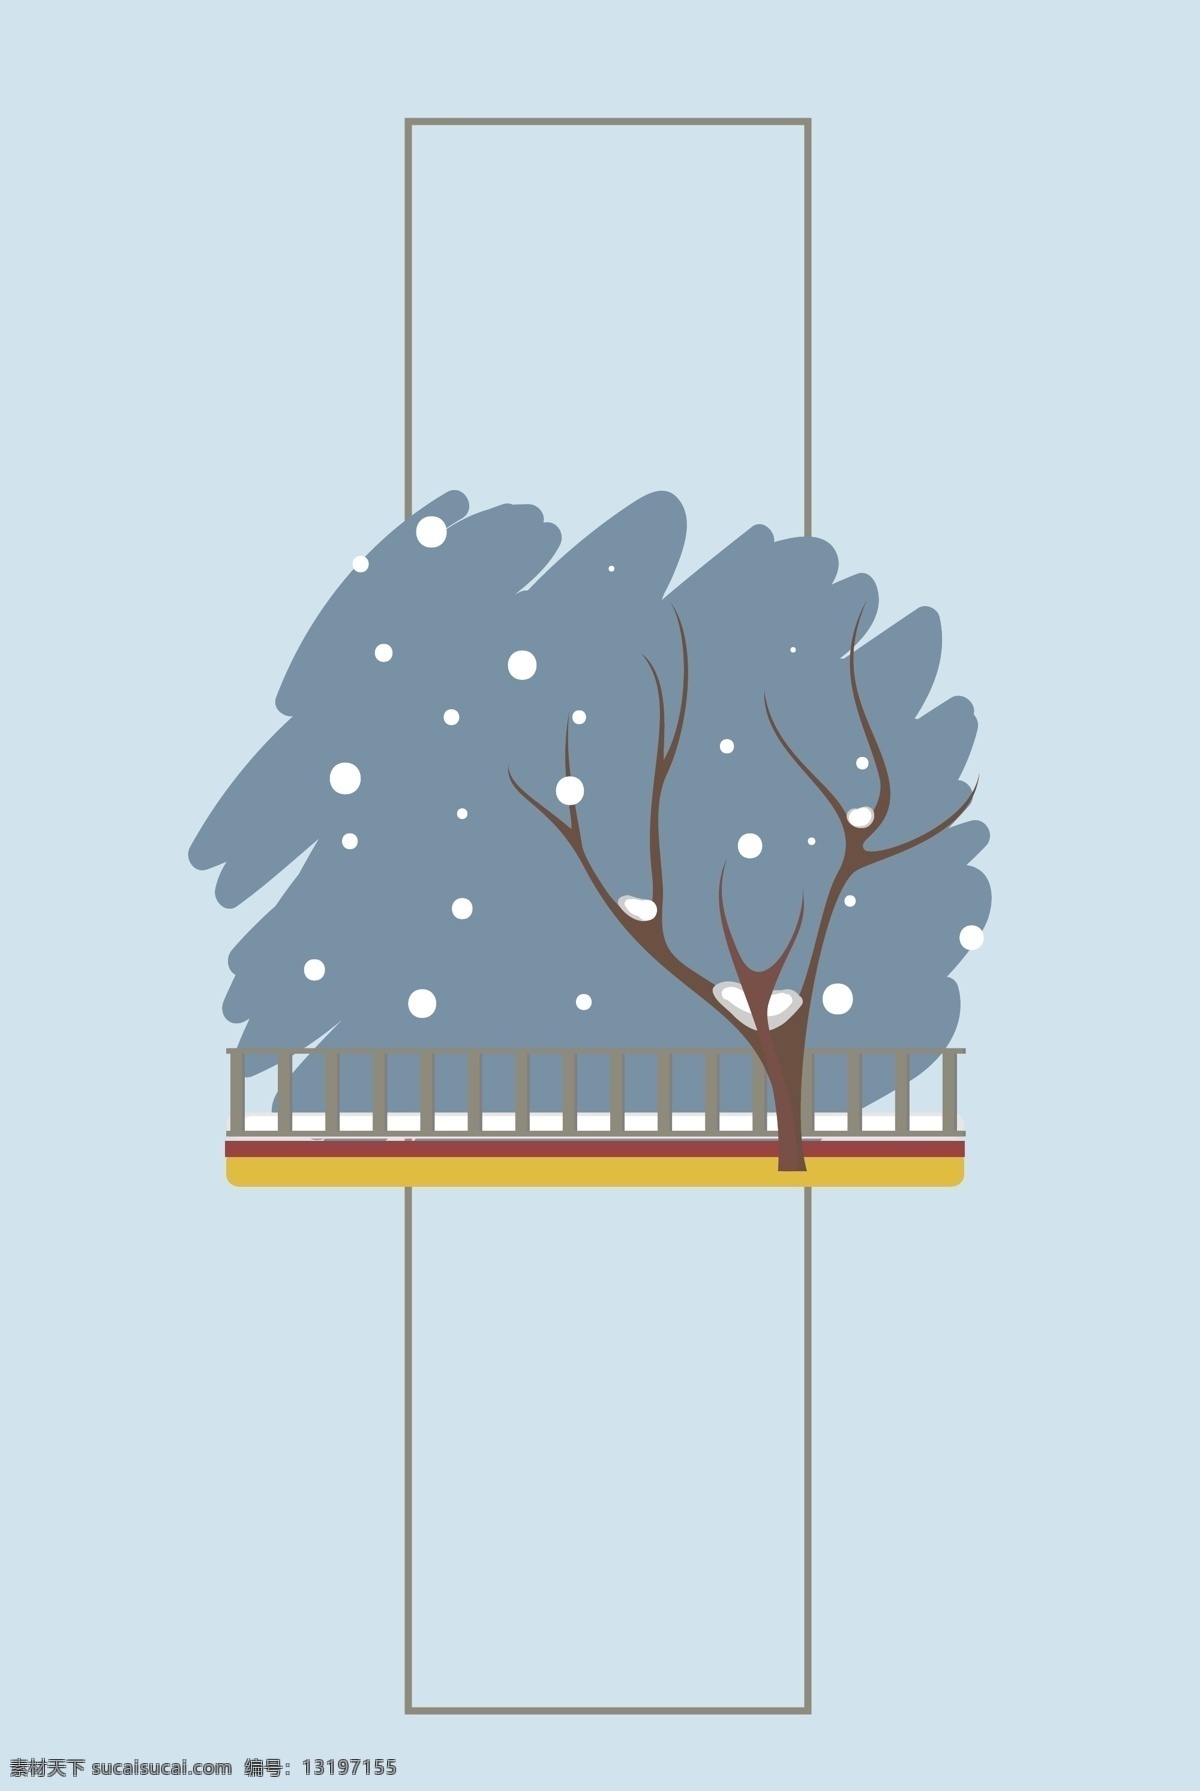 唯美 冬季 雪地 雪景 背景 手绘背景 下雪天背景 蓝色背景 树木背景 冬季背景